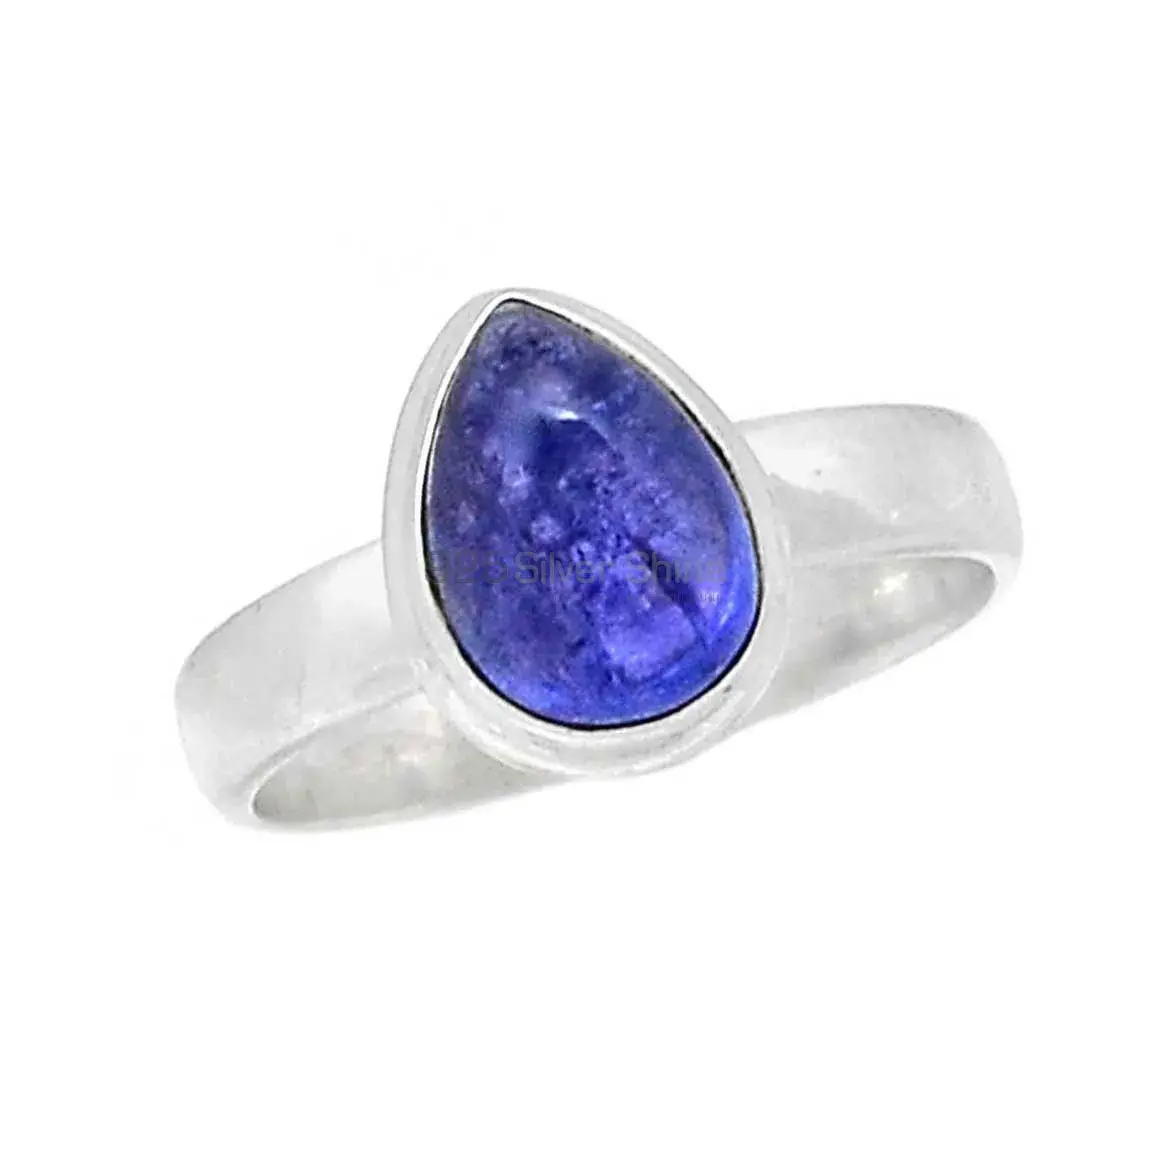 Stunning Kyanite Gemstone Ring In Sterling Silver 925SR2293